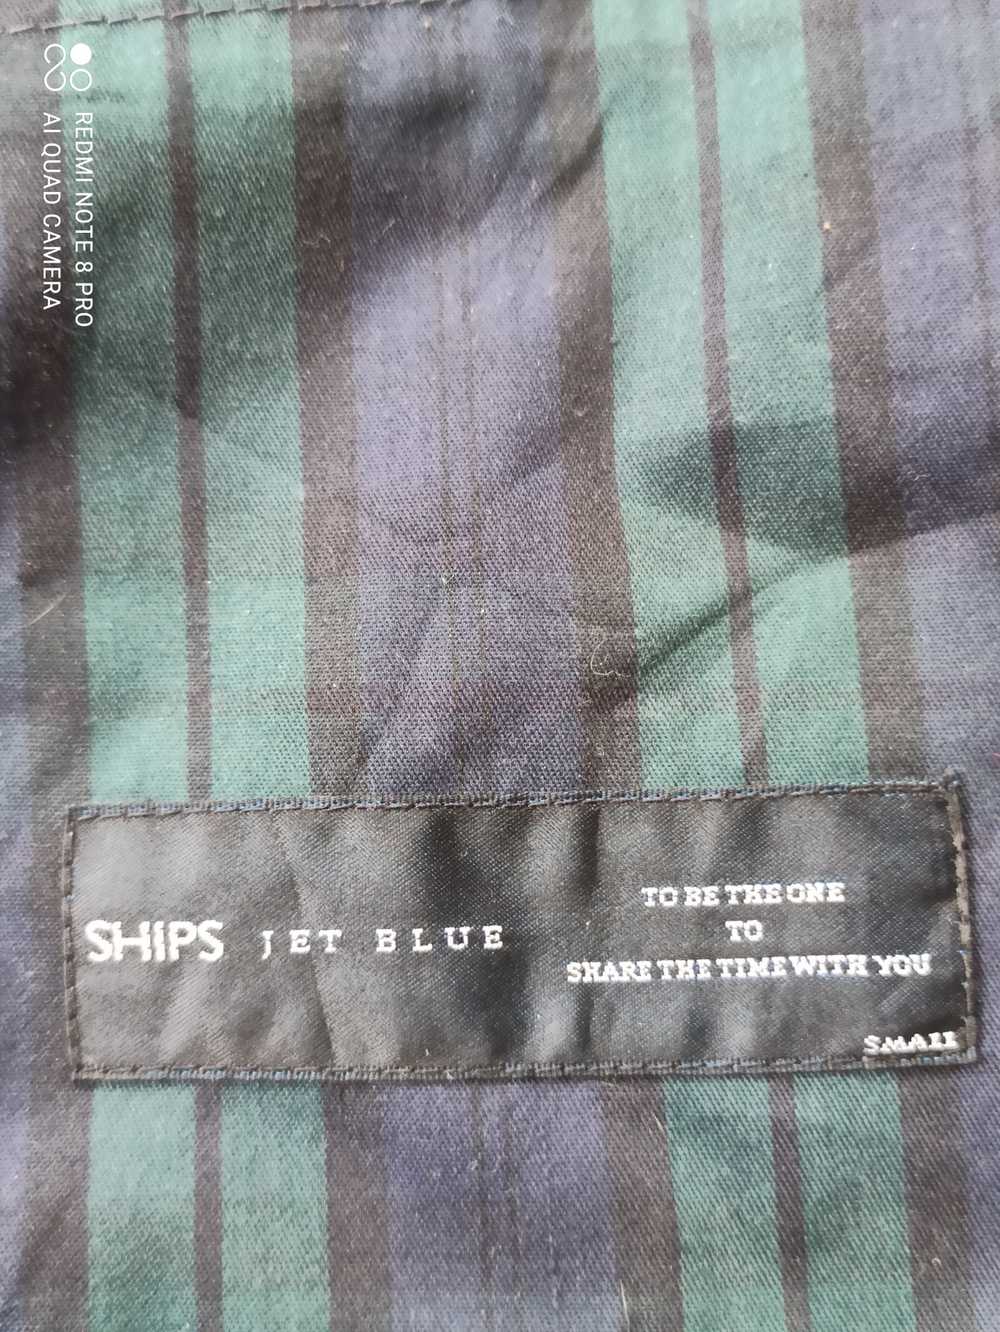 Ships × Ships Jet Blue SHIPS JET BLUE - image 6